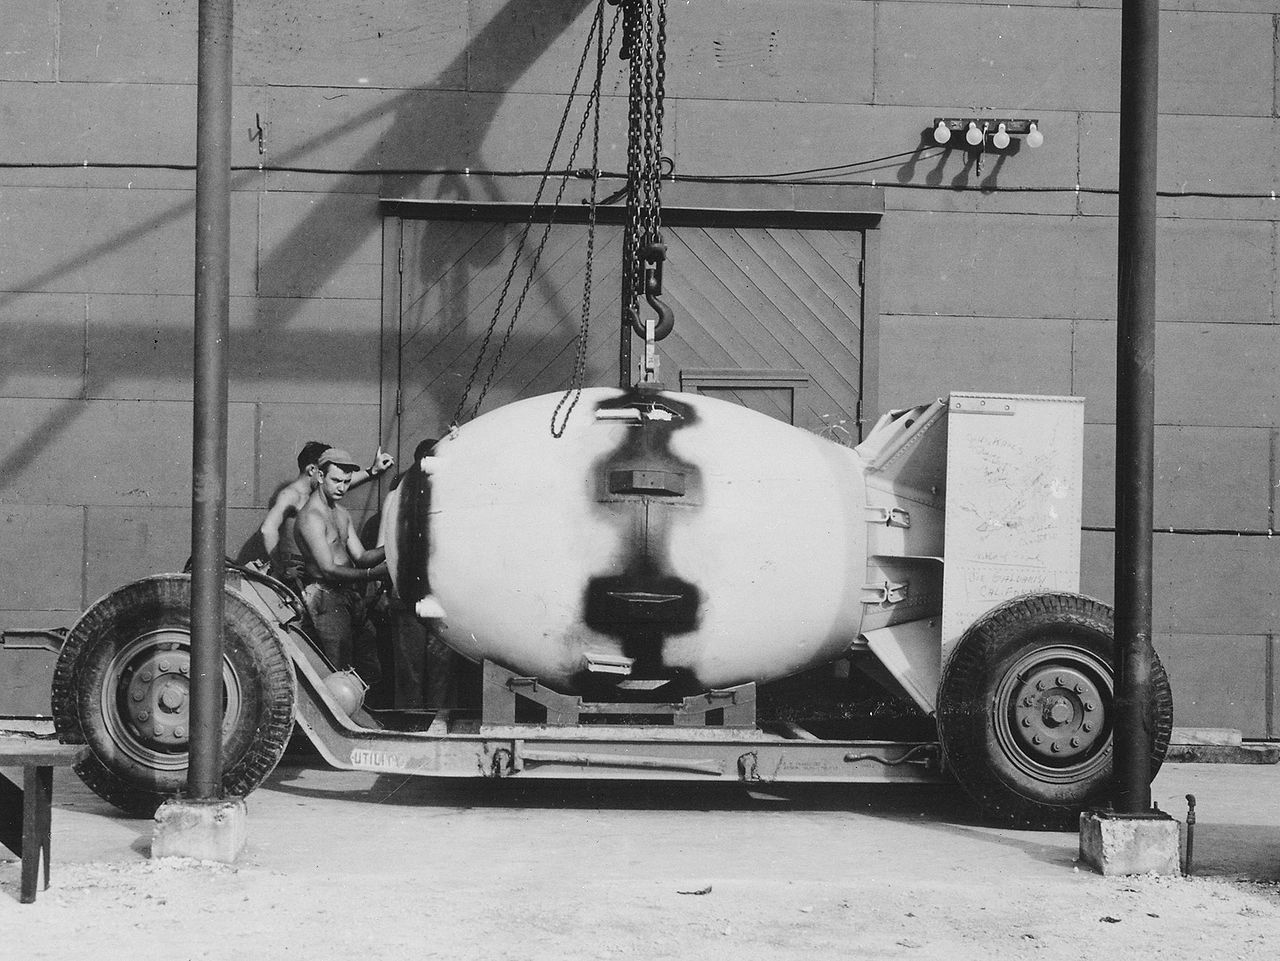 fat man atomic bomb